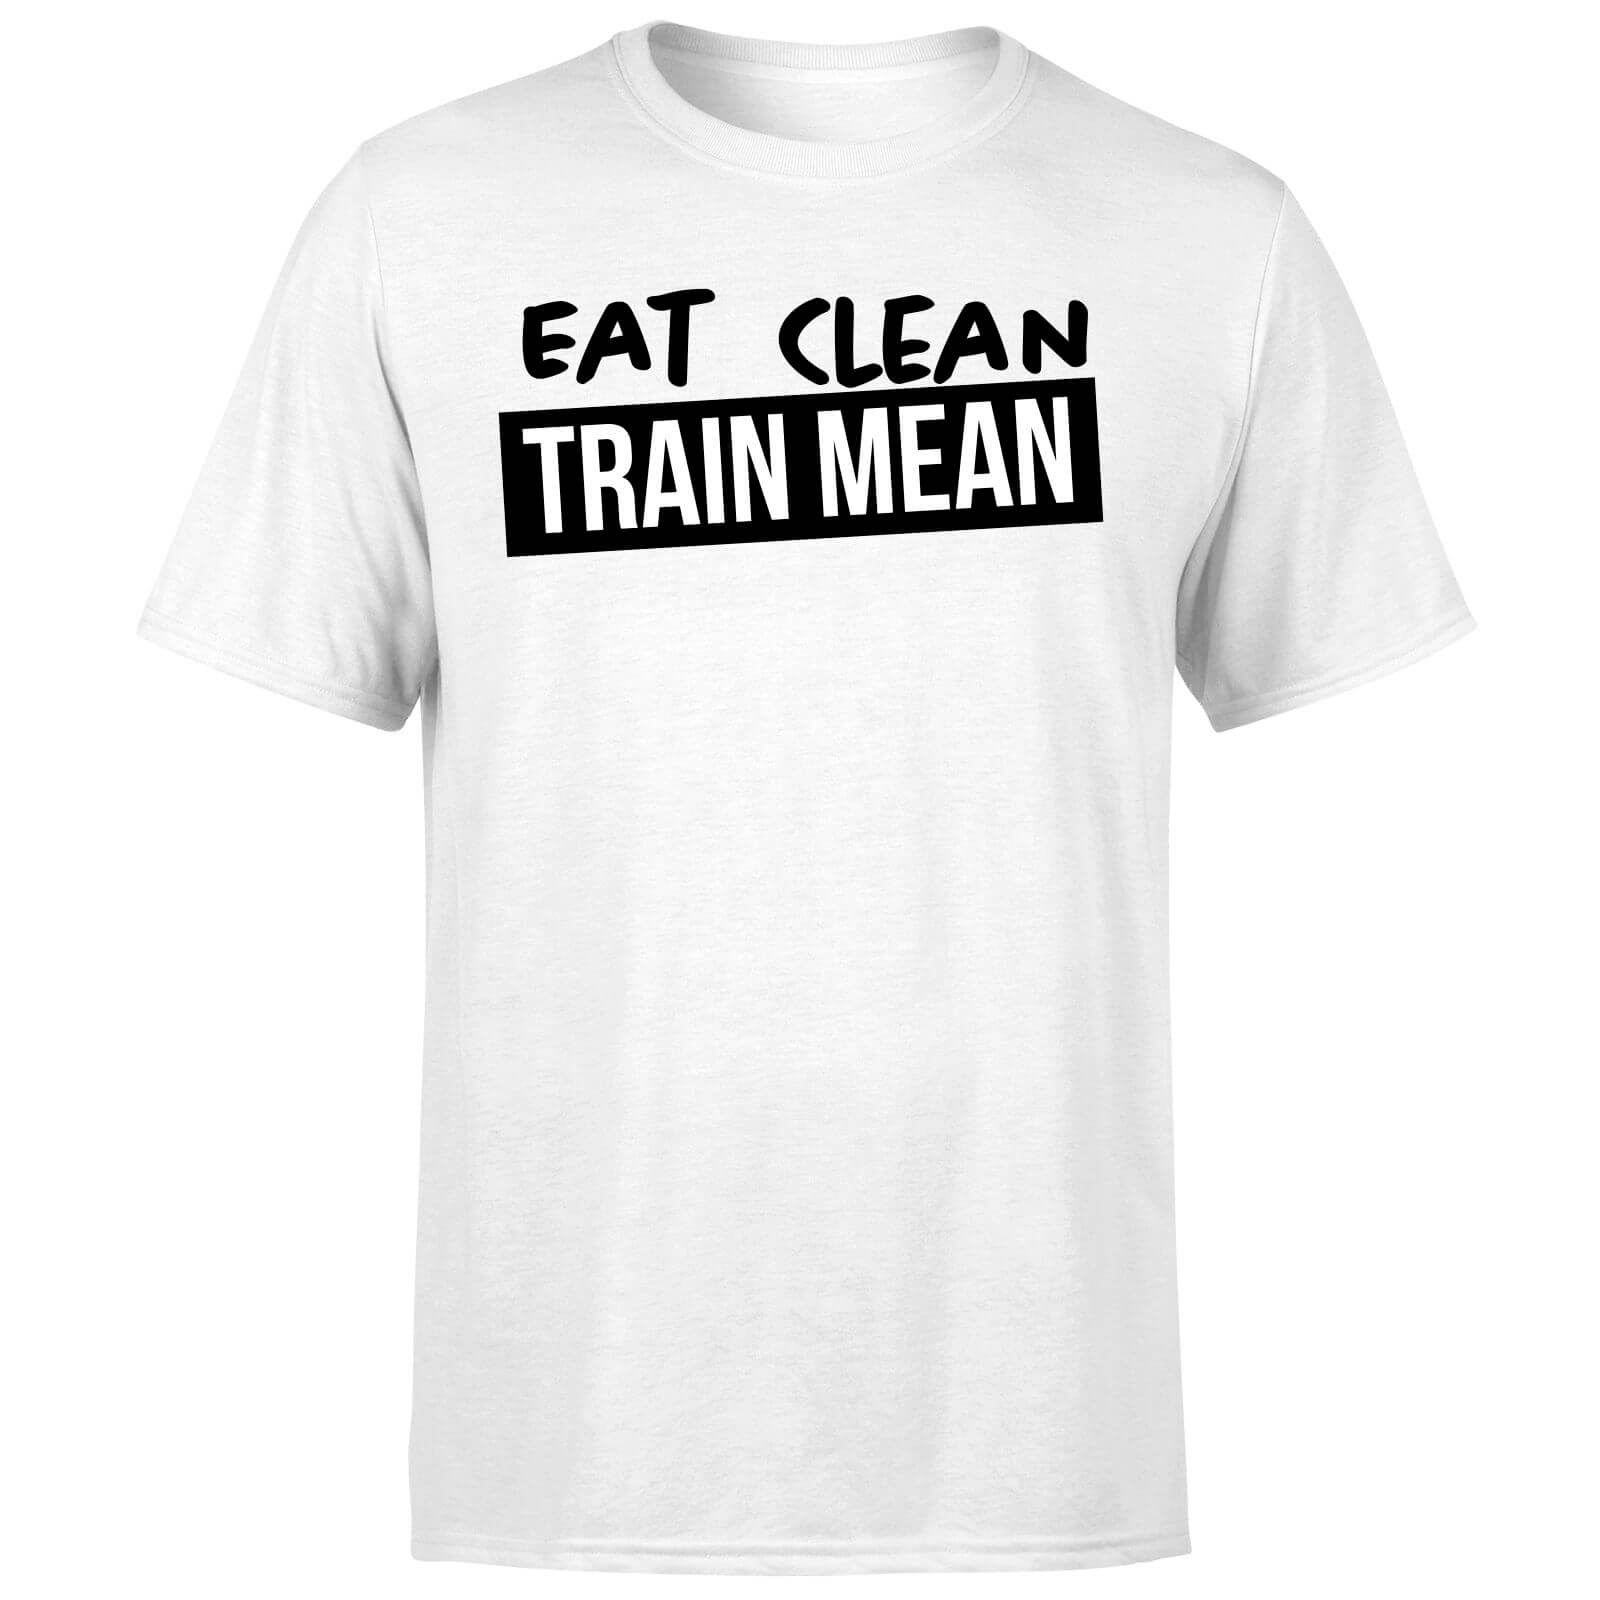 Eat Clean Train Mean T-Shirt - White - S - White